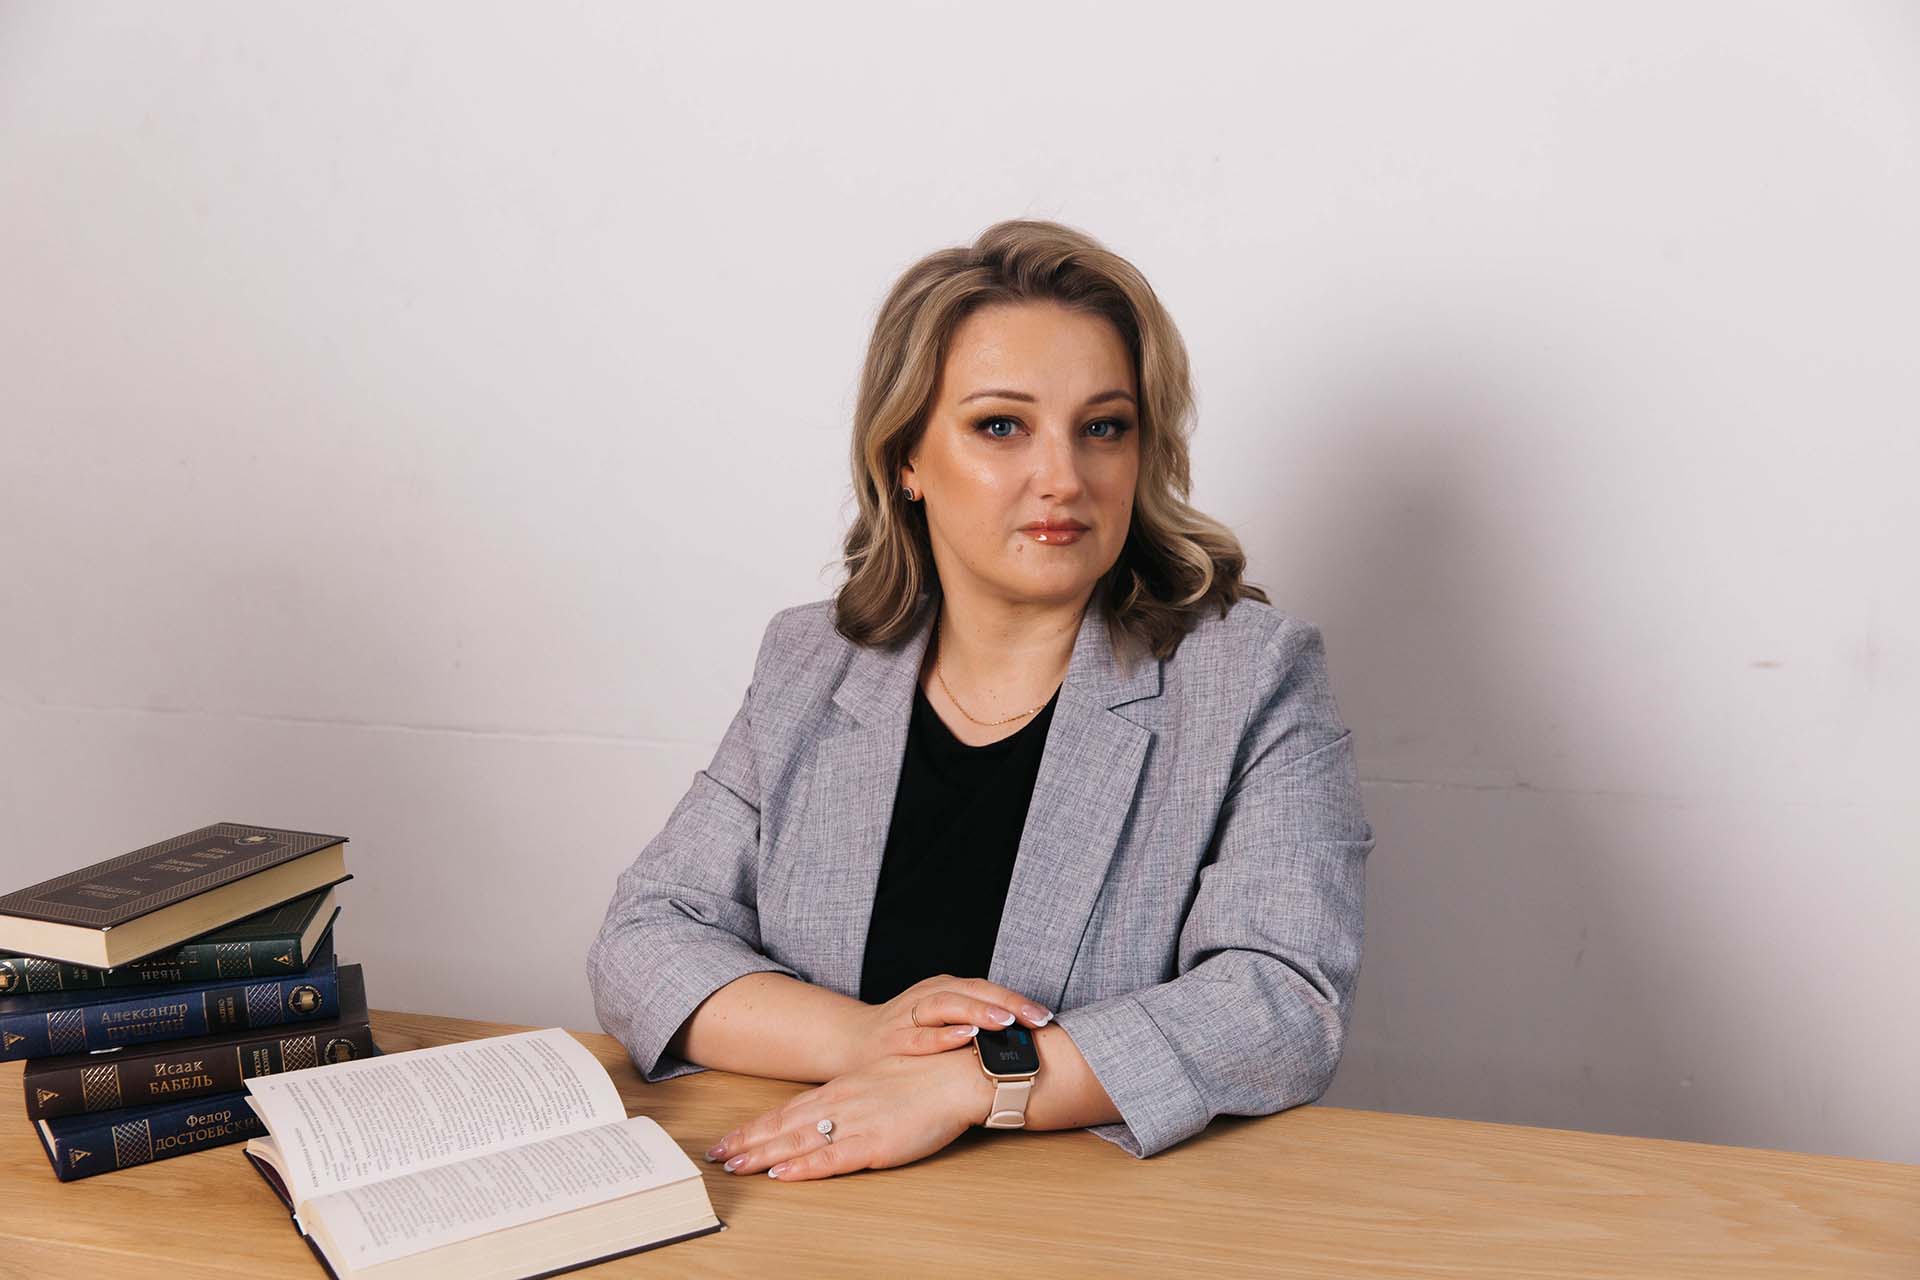 Евгения Зубова - предприниматель, спикер, бизнес-консультант предпринимателей по учету финансов и налогообложению